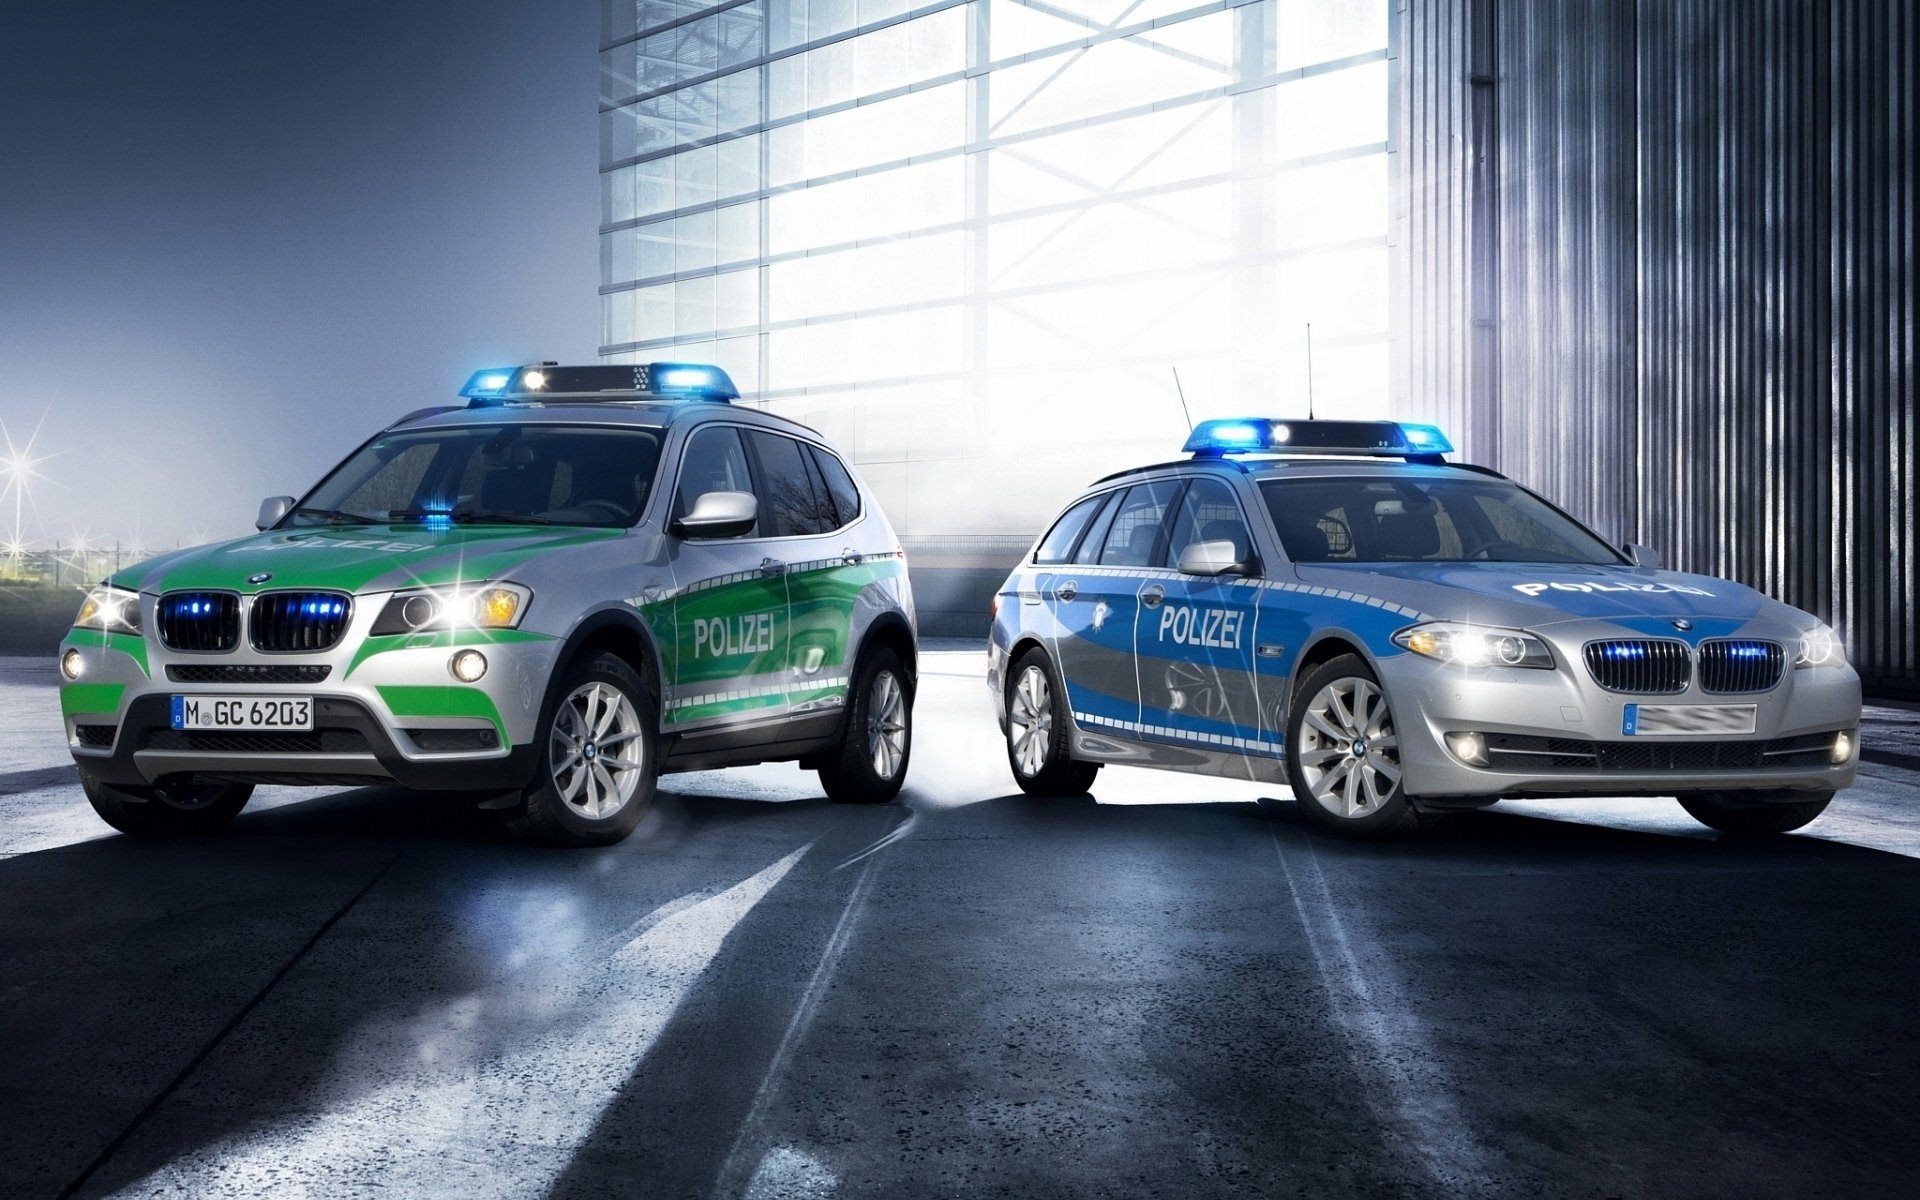 Зеленая полицейская машина. БМВ х5 полиция Германии. Полицейская БМВ х5. БМВ универсал полиция Германии. БМВ 3 полиции Германии.